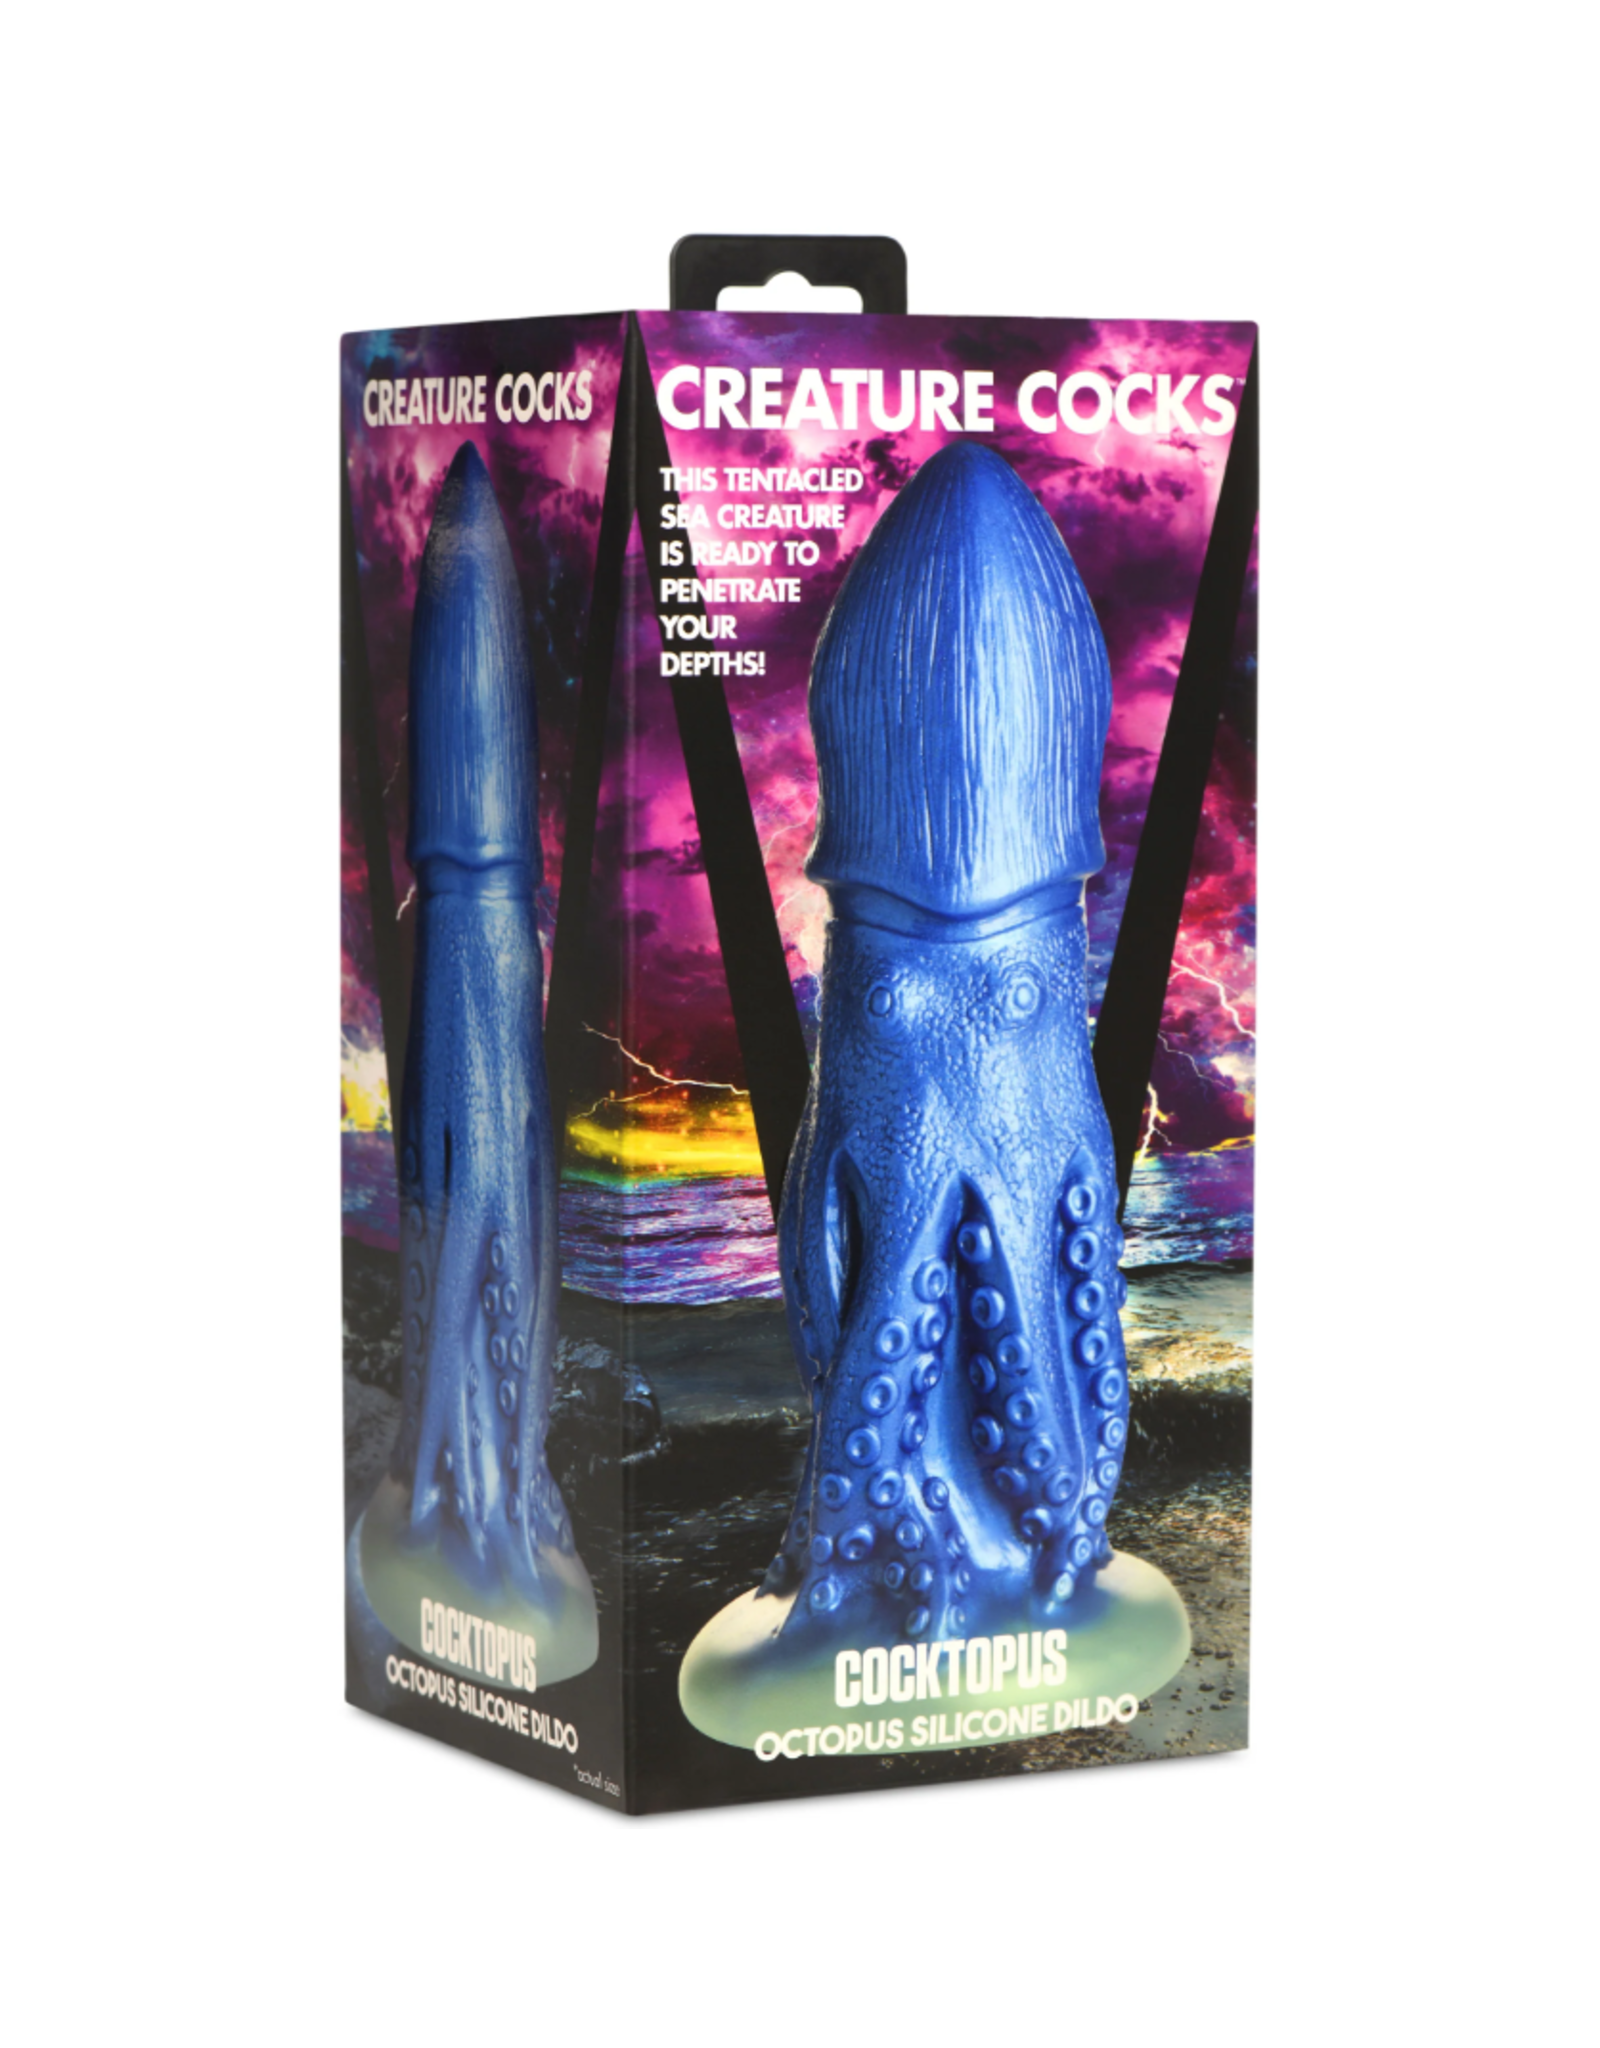 XR Brands Creature Cocks - Cocktopus Octopus Silicone Dildo